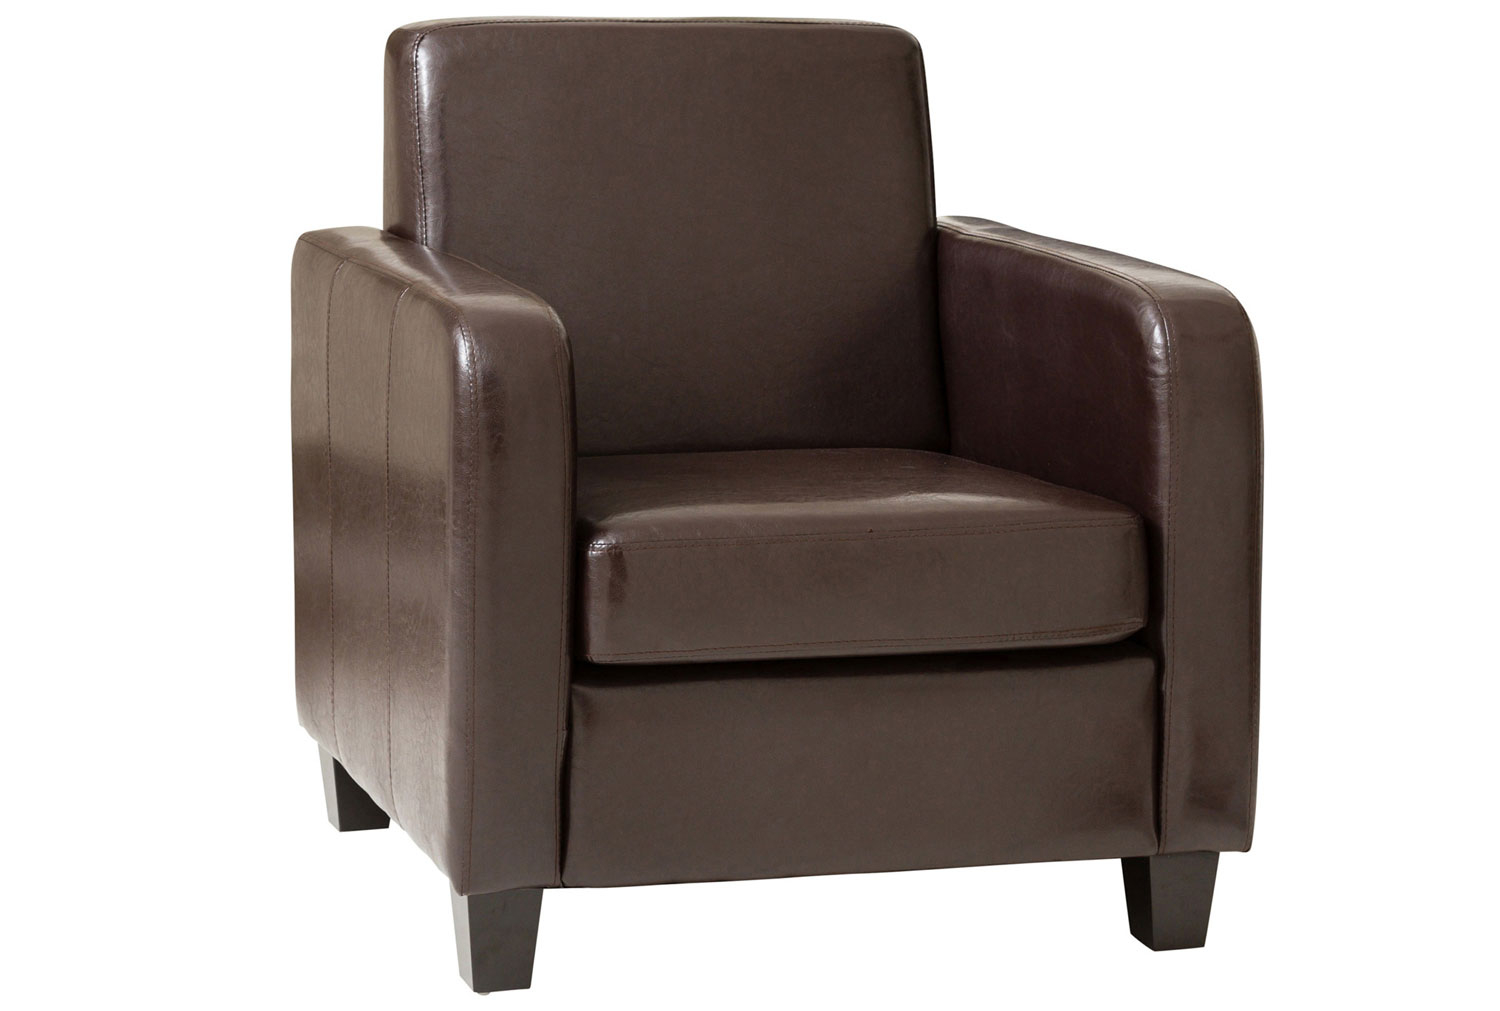 Agadir Leather Tub ArmReception Chair, Brown